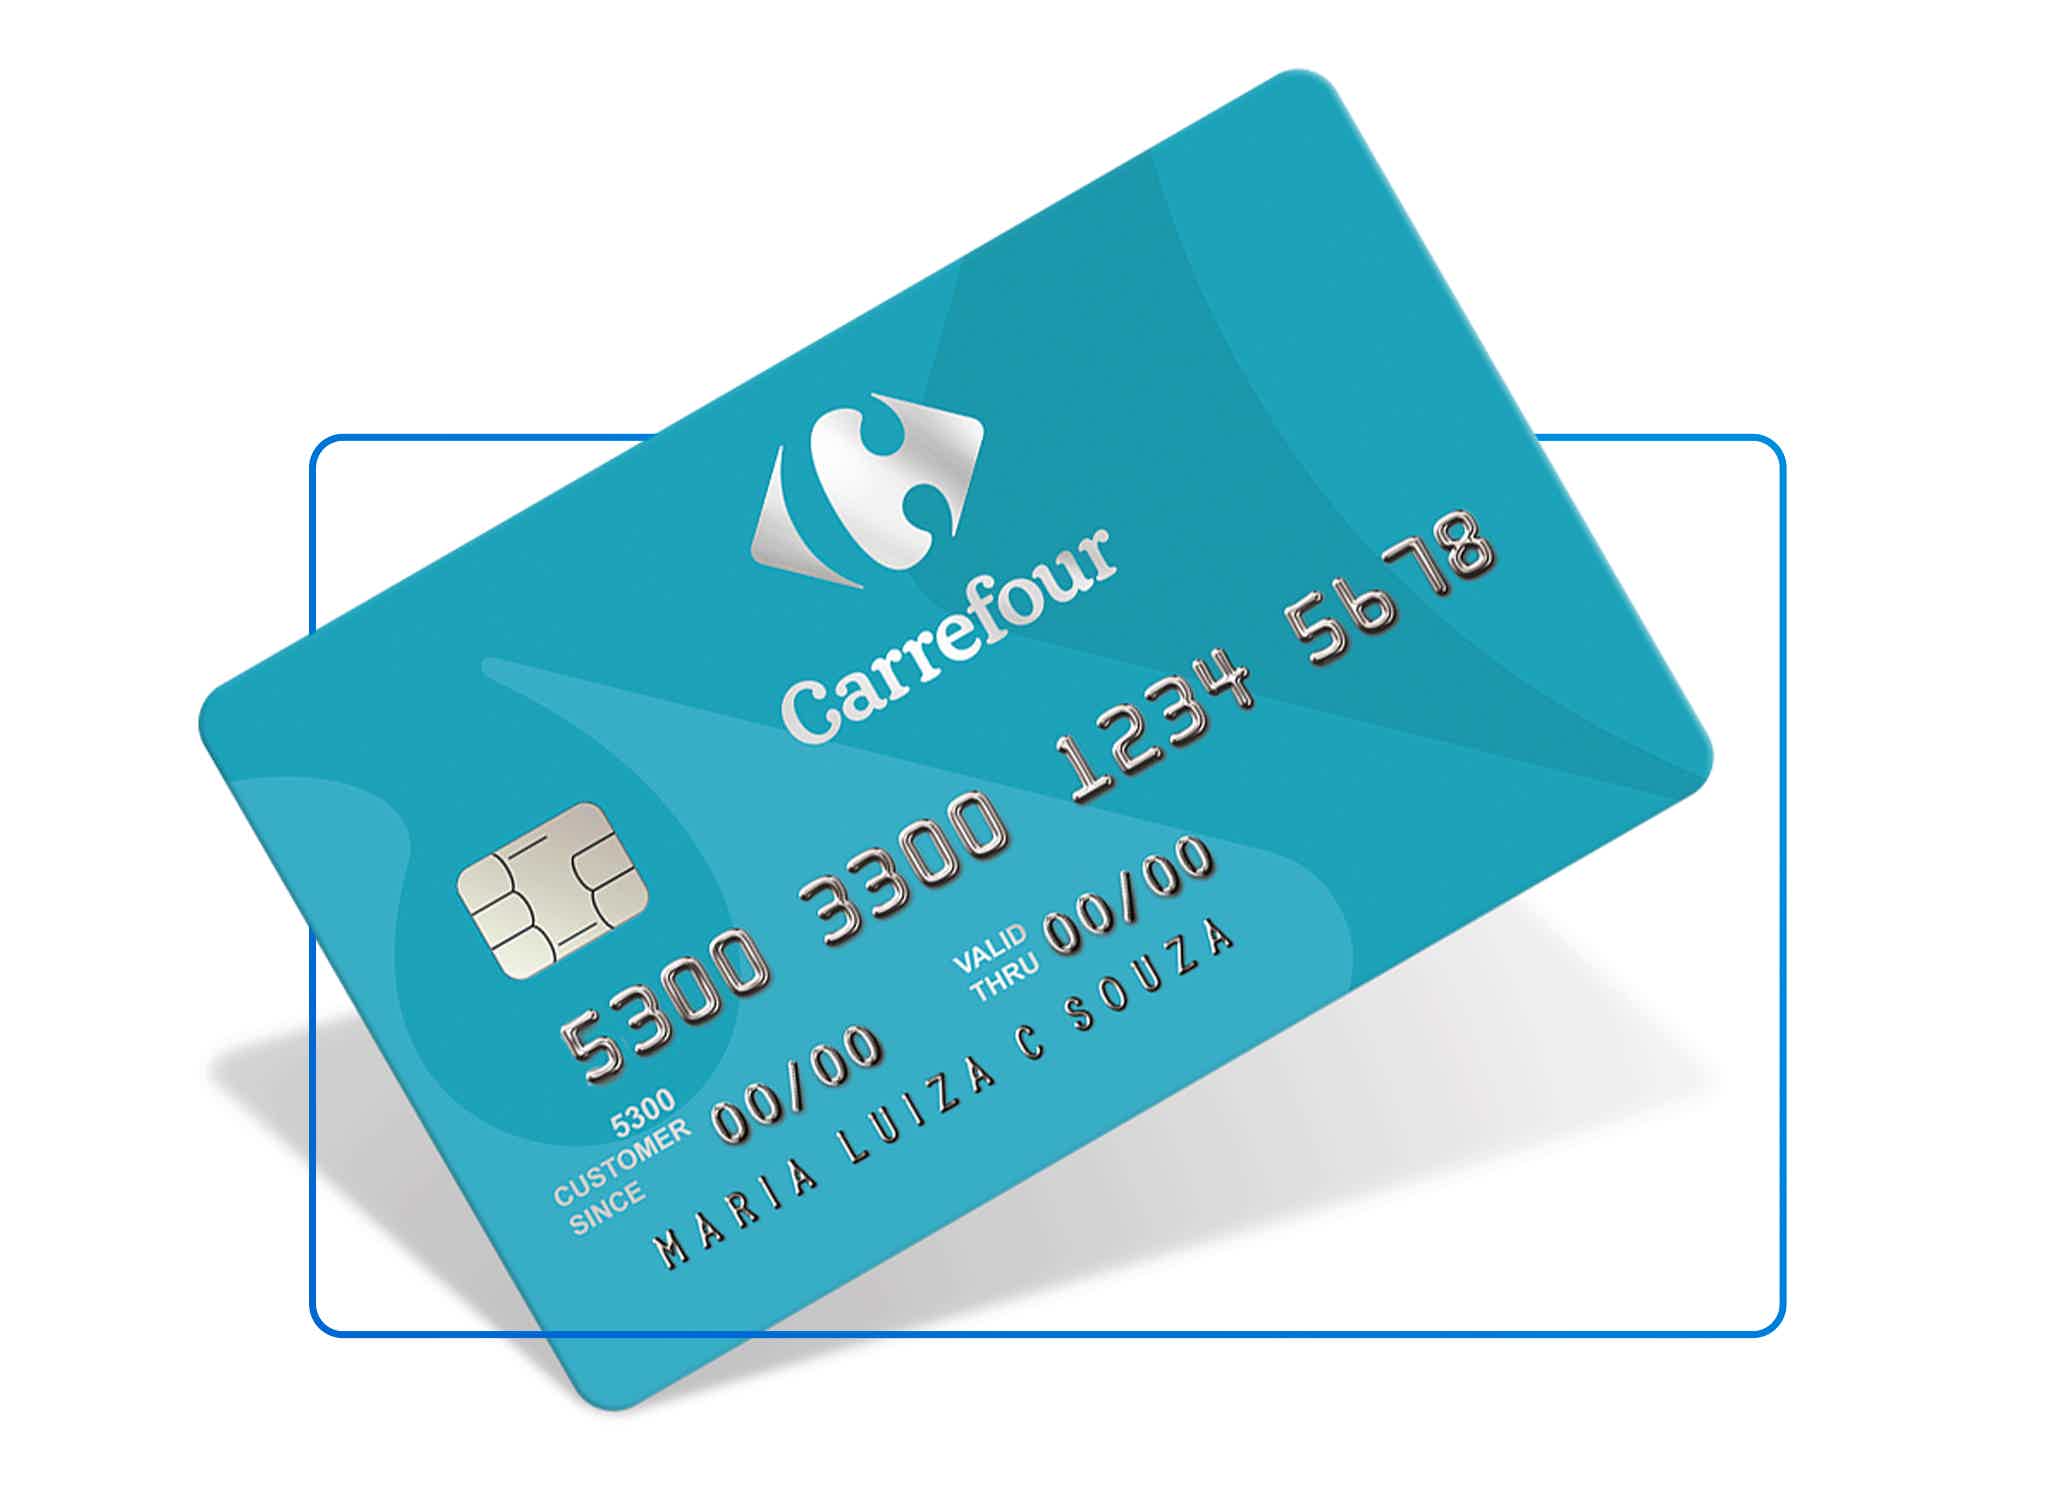 Review cartão Carrefour 2021. Fonte: Carrefour.